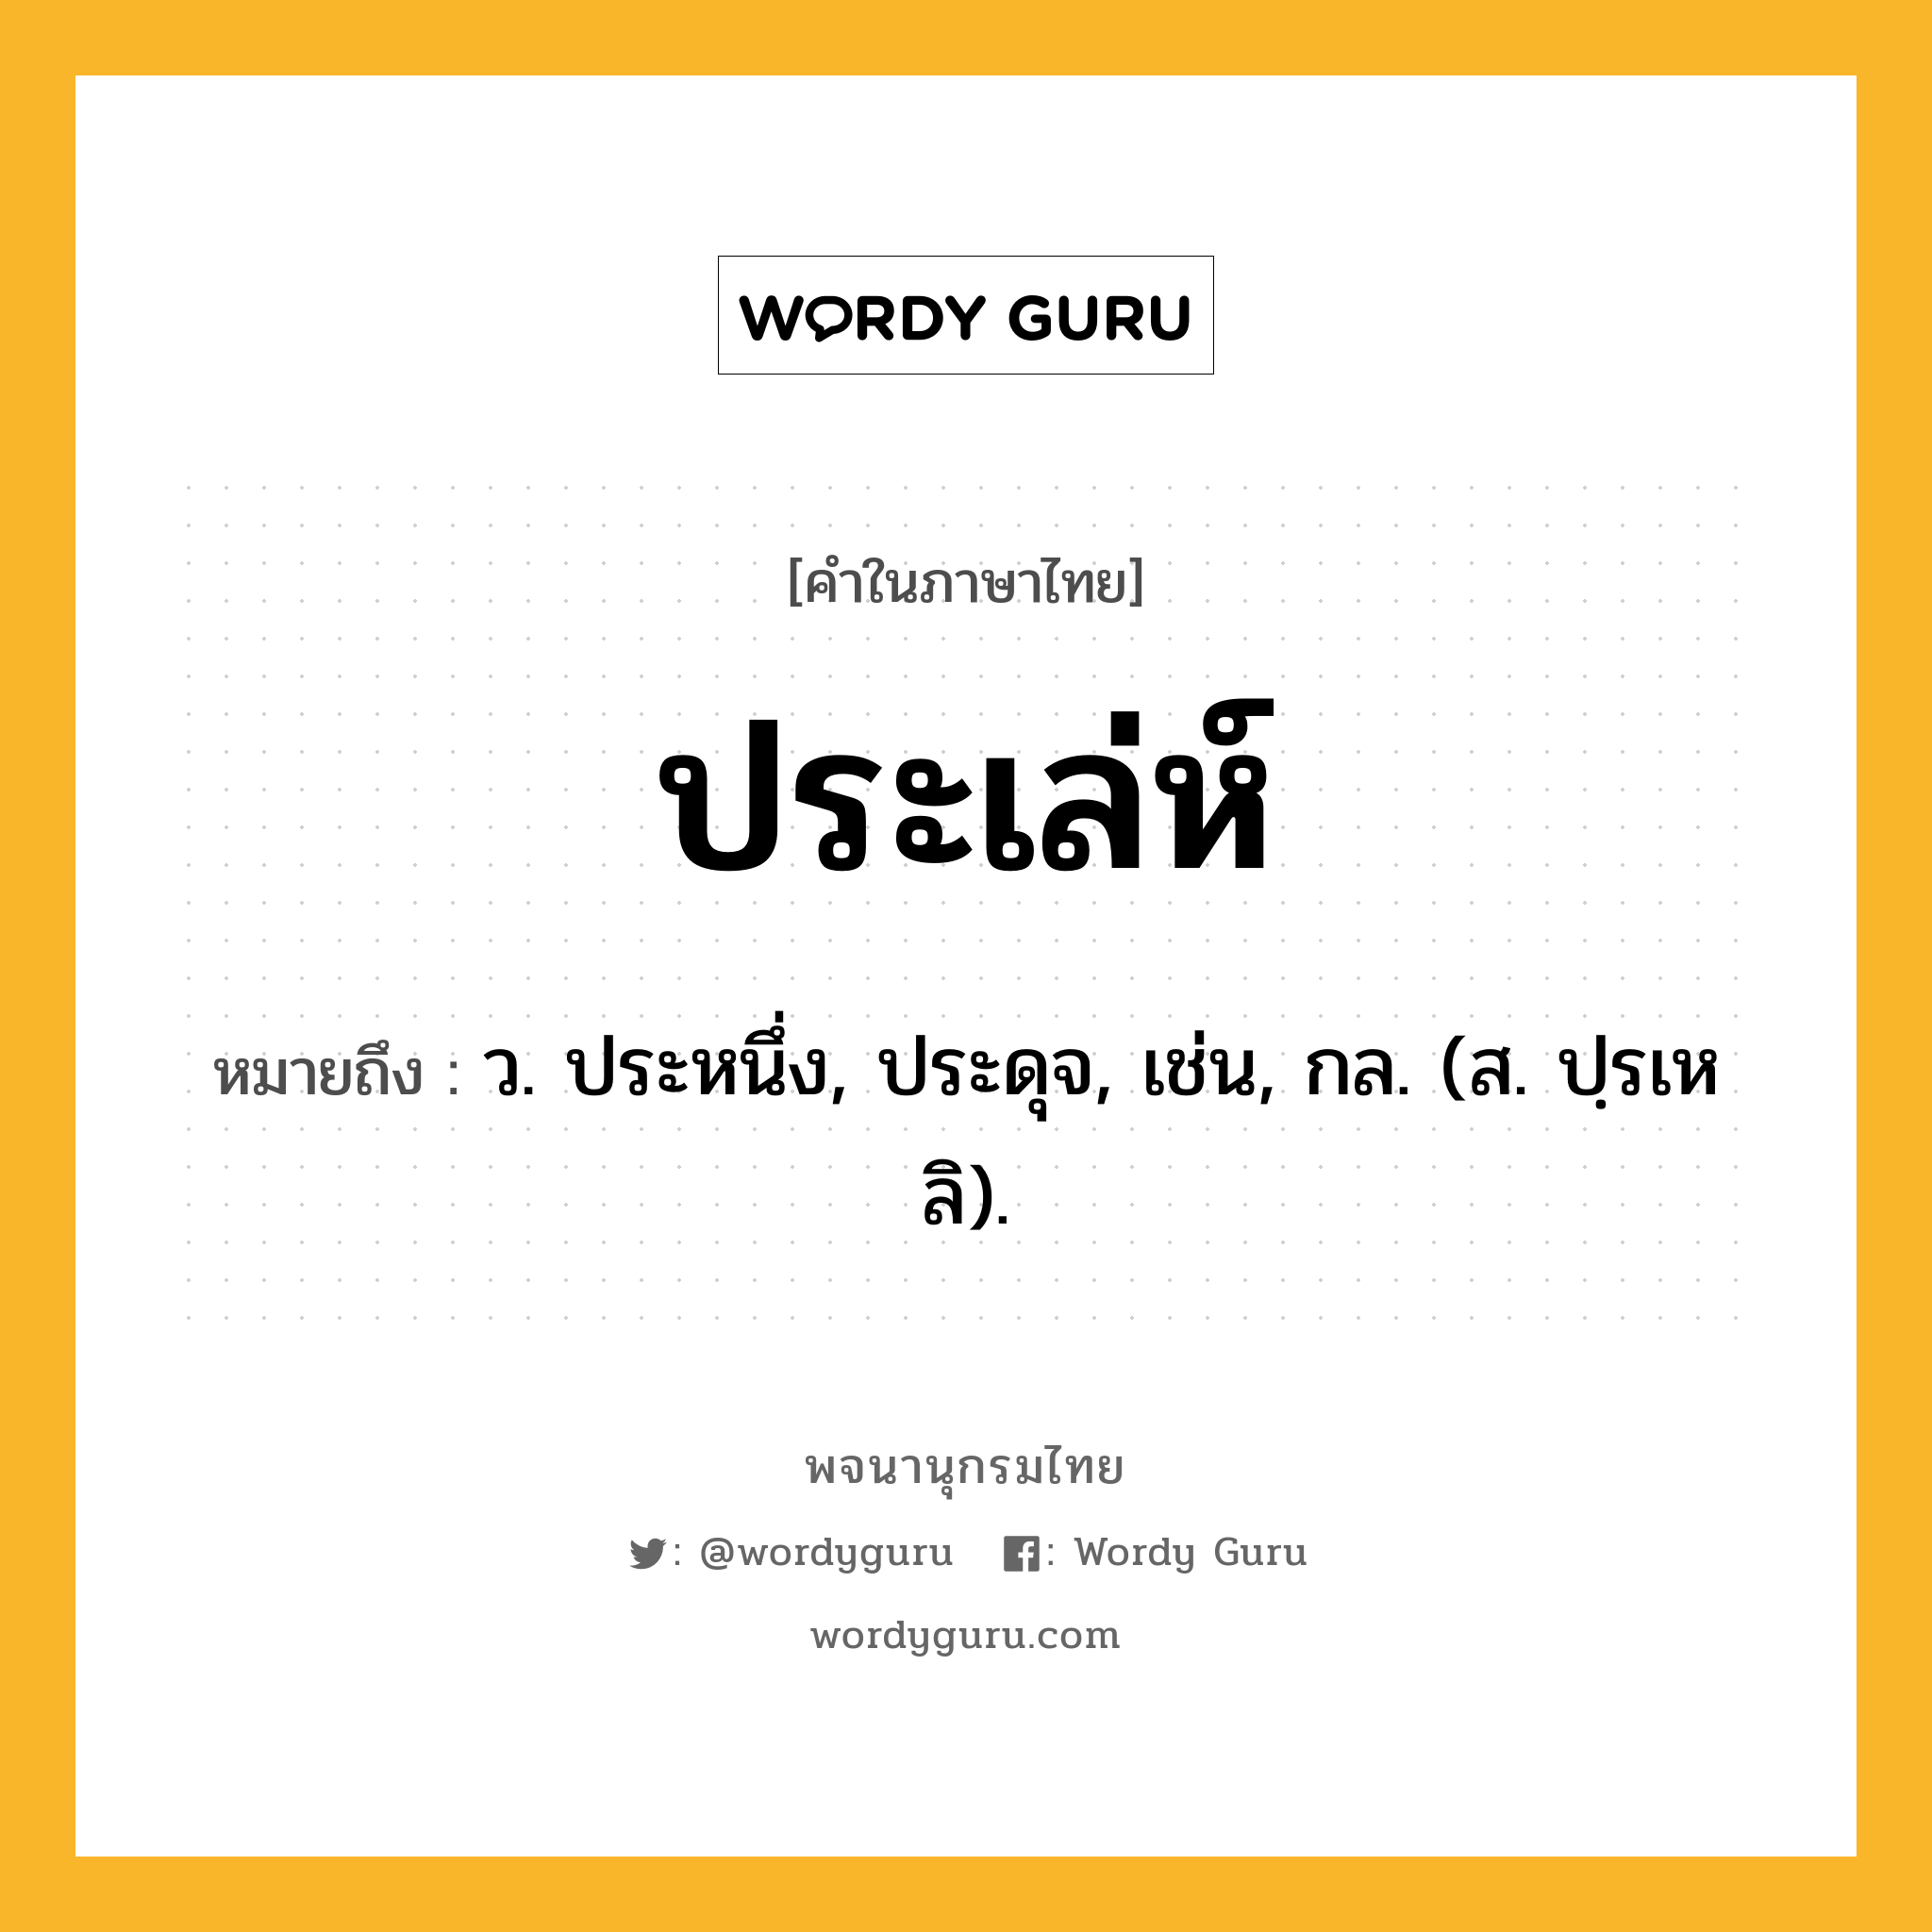 ประเล่ห์ หมายถึงอะไร?, คำในภาษาไทย ประเล่ห์ หมายถึง ว. ประหนึ่ง, ประดุจ, เช่น, กล. (ส. ปฺรเหลิ).